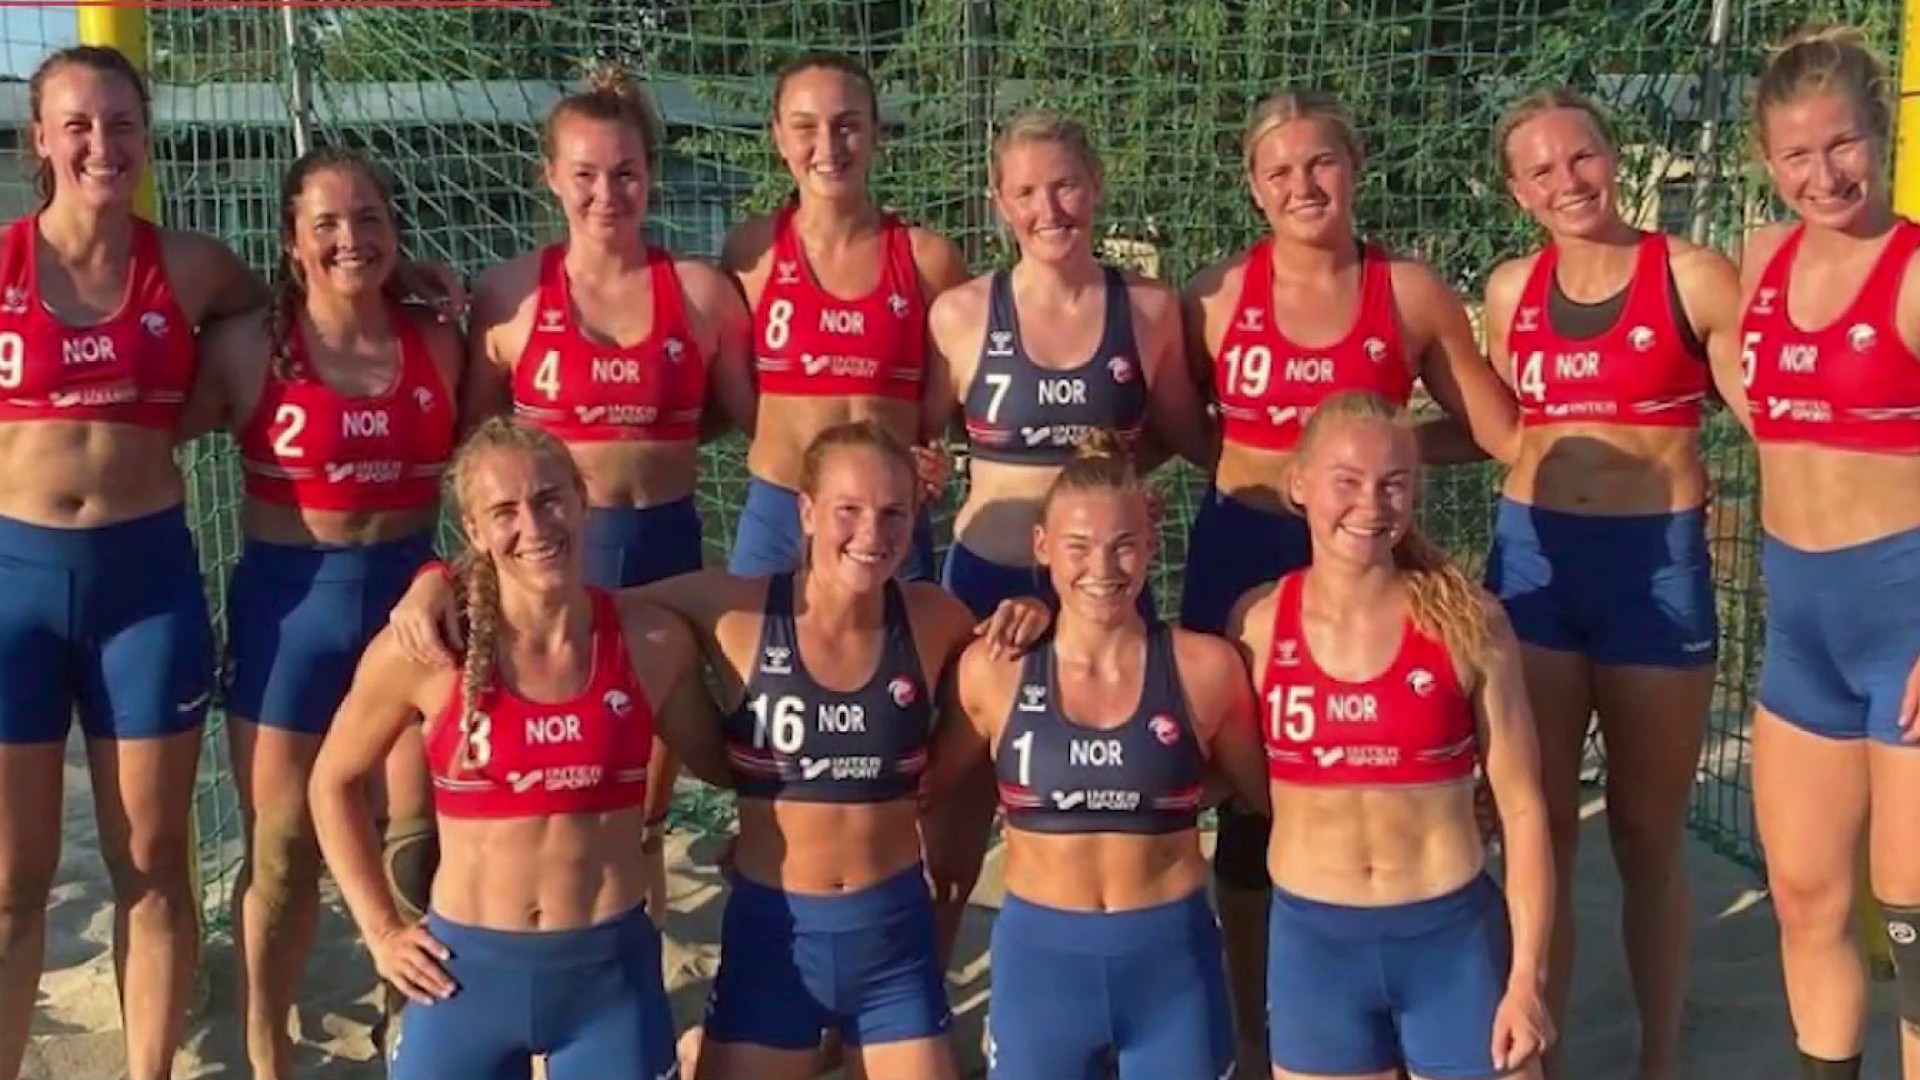 Norwegian women's beach handball team fined for not playing in bikinis